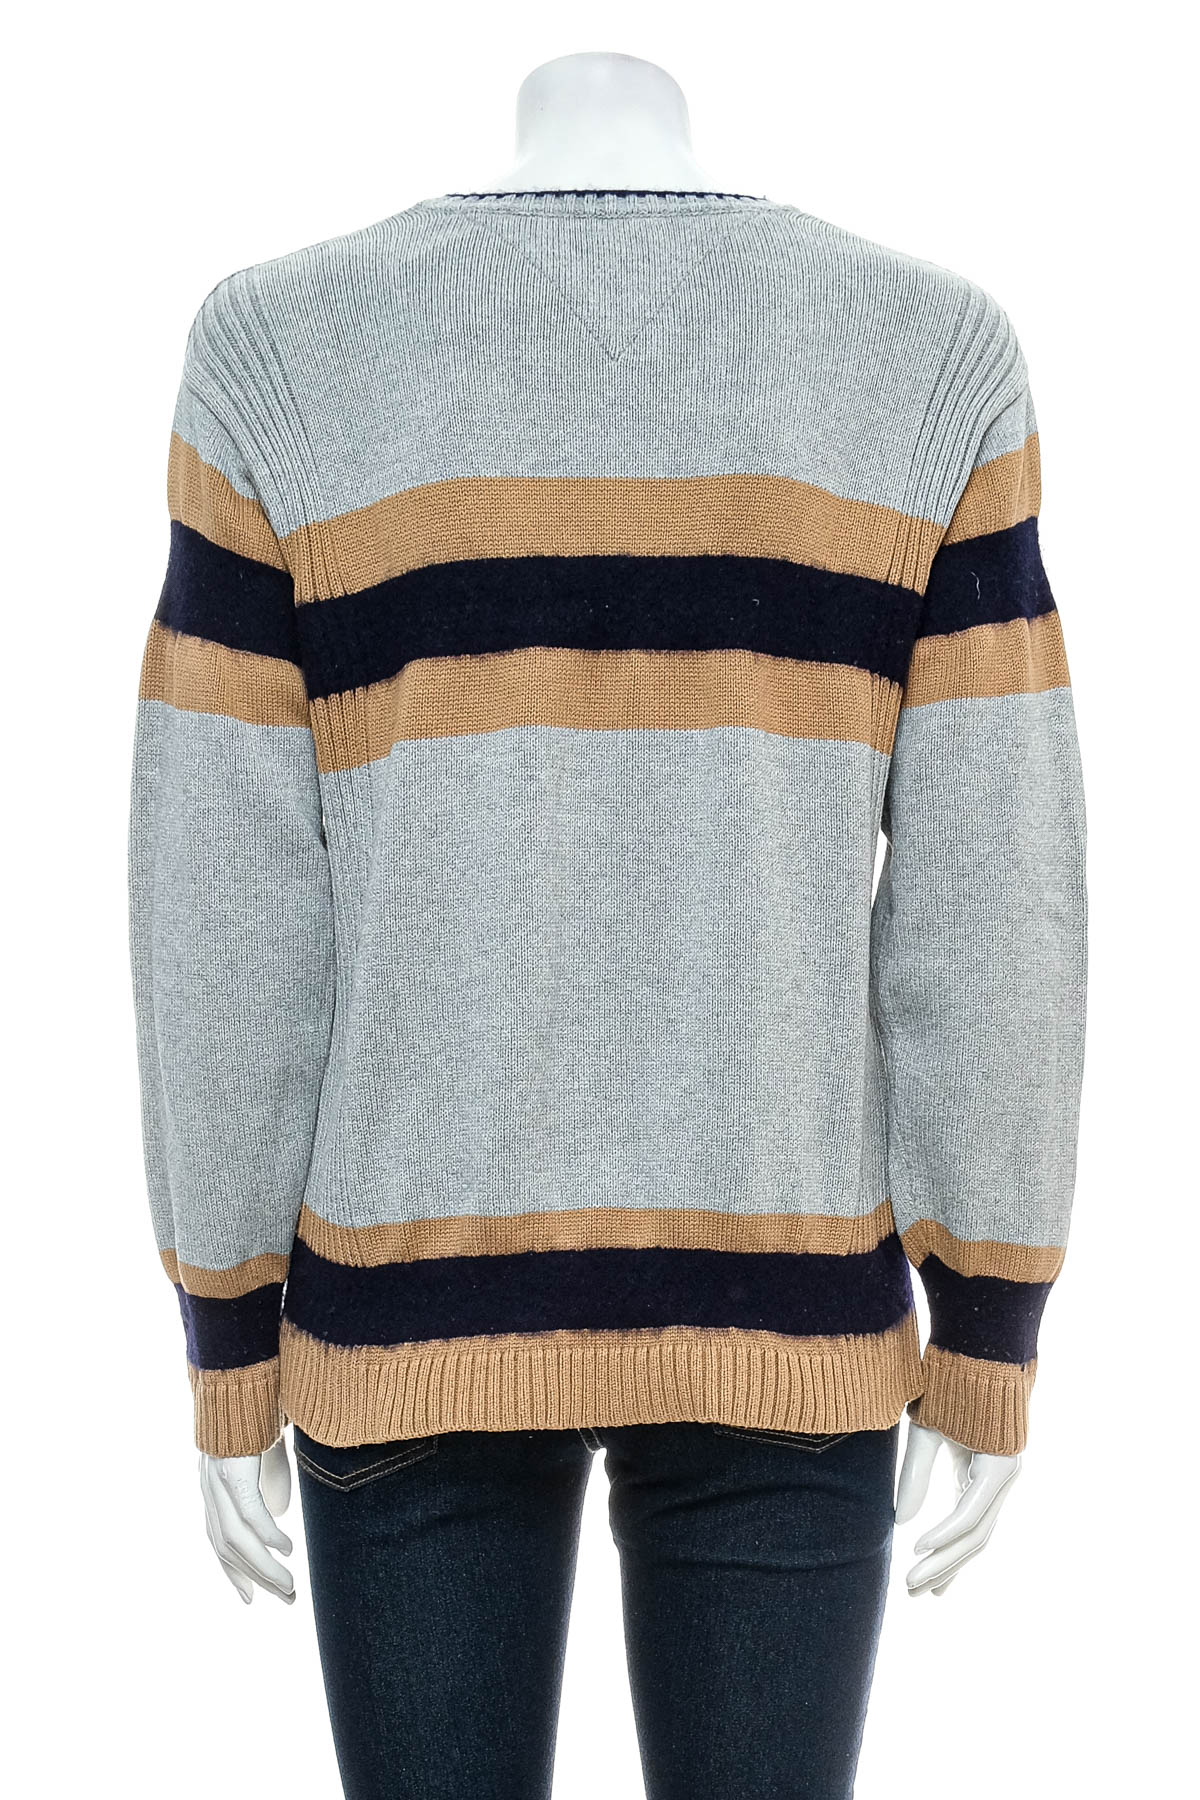 Women's sweater - TOMMY HILFIGER - 1